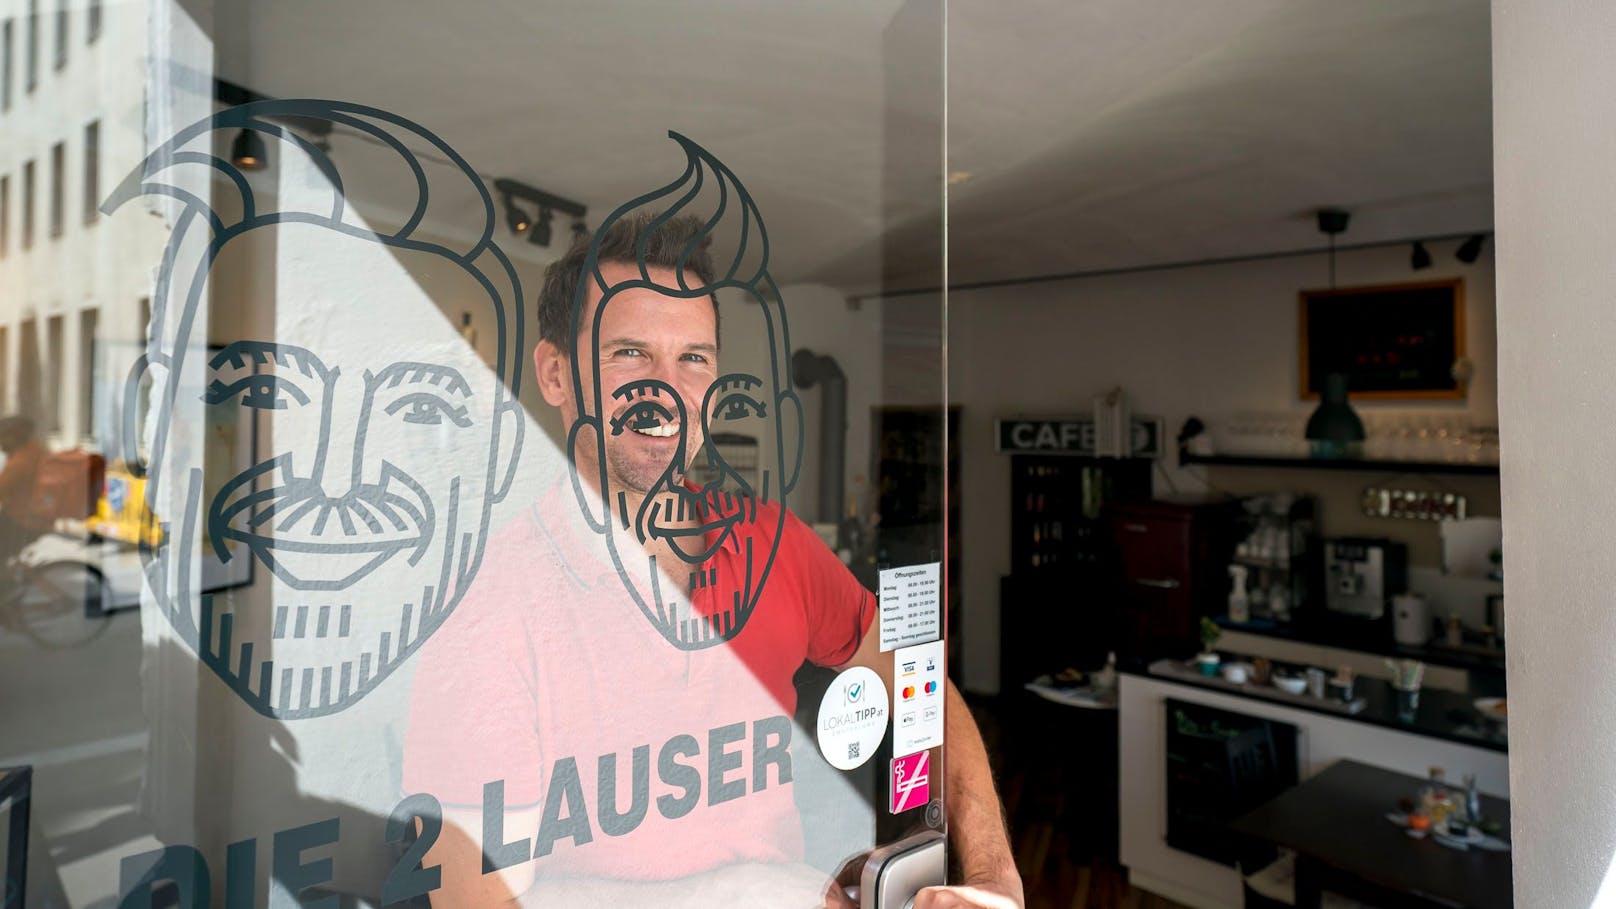 Rechts Cafetier Johann R. (39), links (gemalt) sein Kollege Jürgen P. (48), zusammen führen sie das "Café die 2 Lauser"